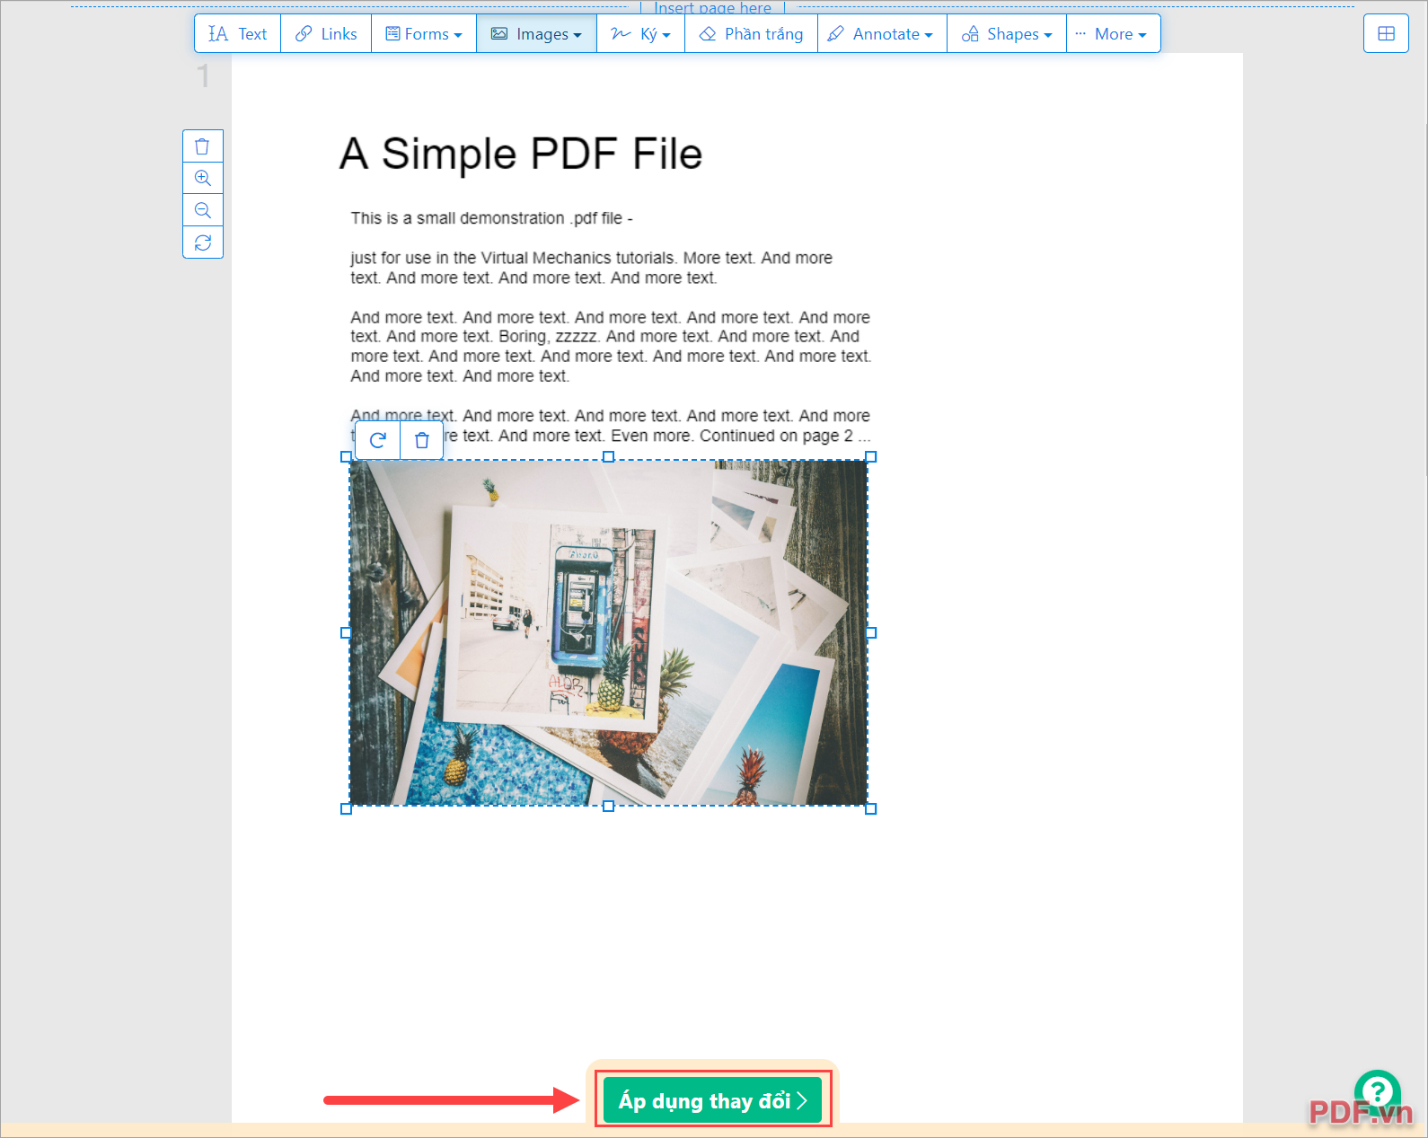 Chọn Áp dụng thay đổi để hệ thống xử lý hình ảnh chèn vào PDF